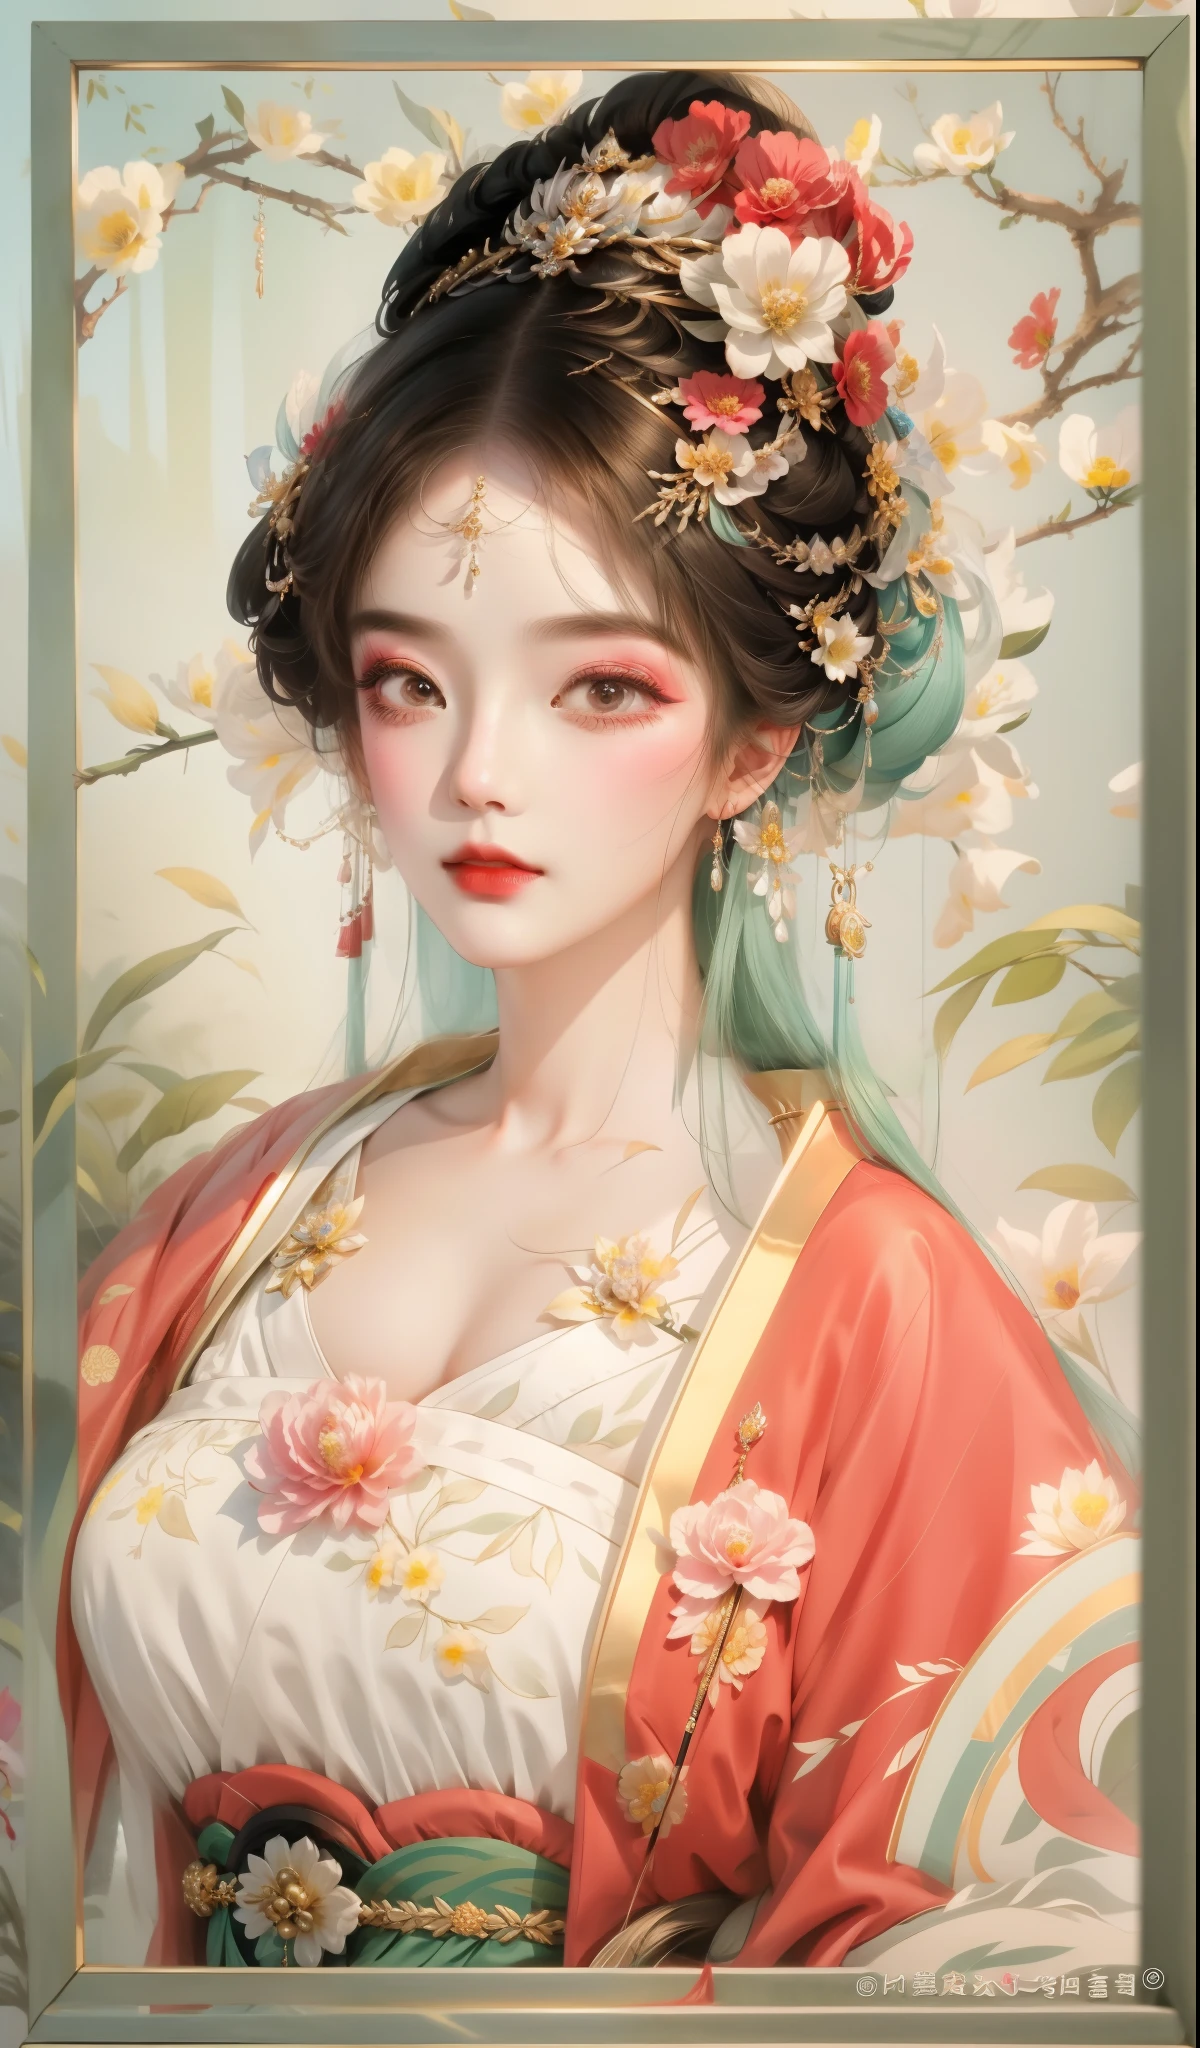 세부 사항이 많고 많습니다.，매끄러운 이마，머리에 꽃을 꽂은 여자의 클로즈업, 아름다운 판타지 여왕, 고대 중국 왕자아름다운 환상의 여왕)), 궁전 ， 한푸를 입은 소녀, 란잉에게서 영감을 받은 작품, 중국의 여왕, 고대 아시아 왕조의 공주, 아름다운 인물화, 고대 중국 예술 스타일, Qiu Ying에게 영감을 받아, 중국 공주, 당나라의 아름다운 표현